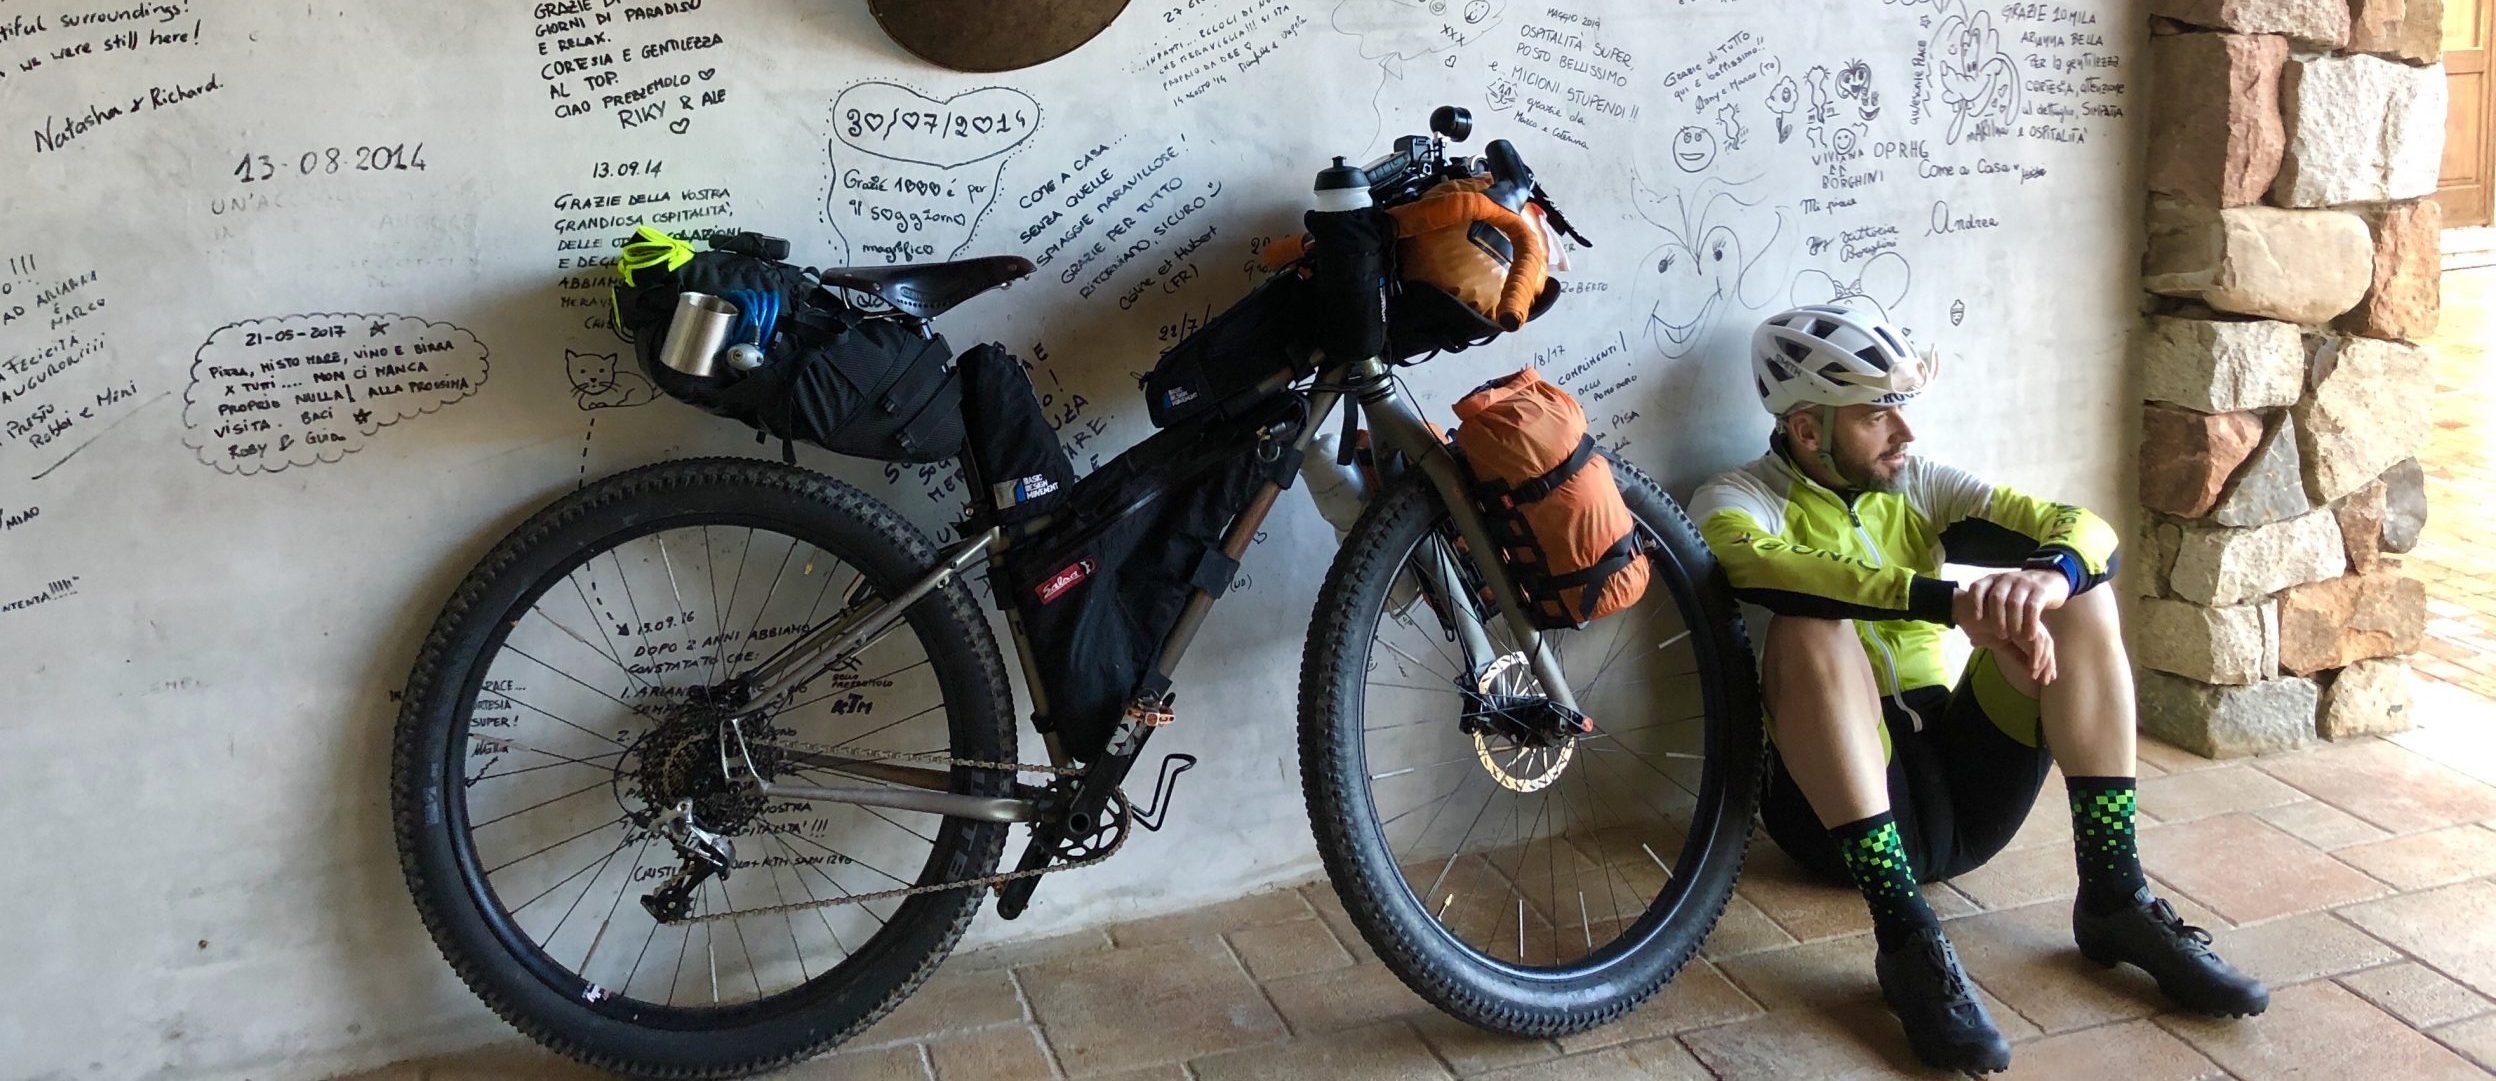 viaggiatore lento, chi sono, cicloviaggi, cicloturismo in italia, viaggiare in bici, bikepacking